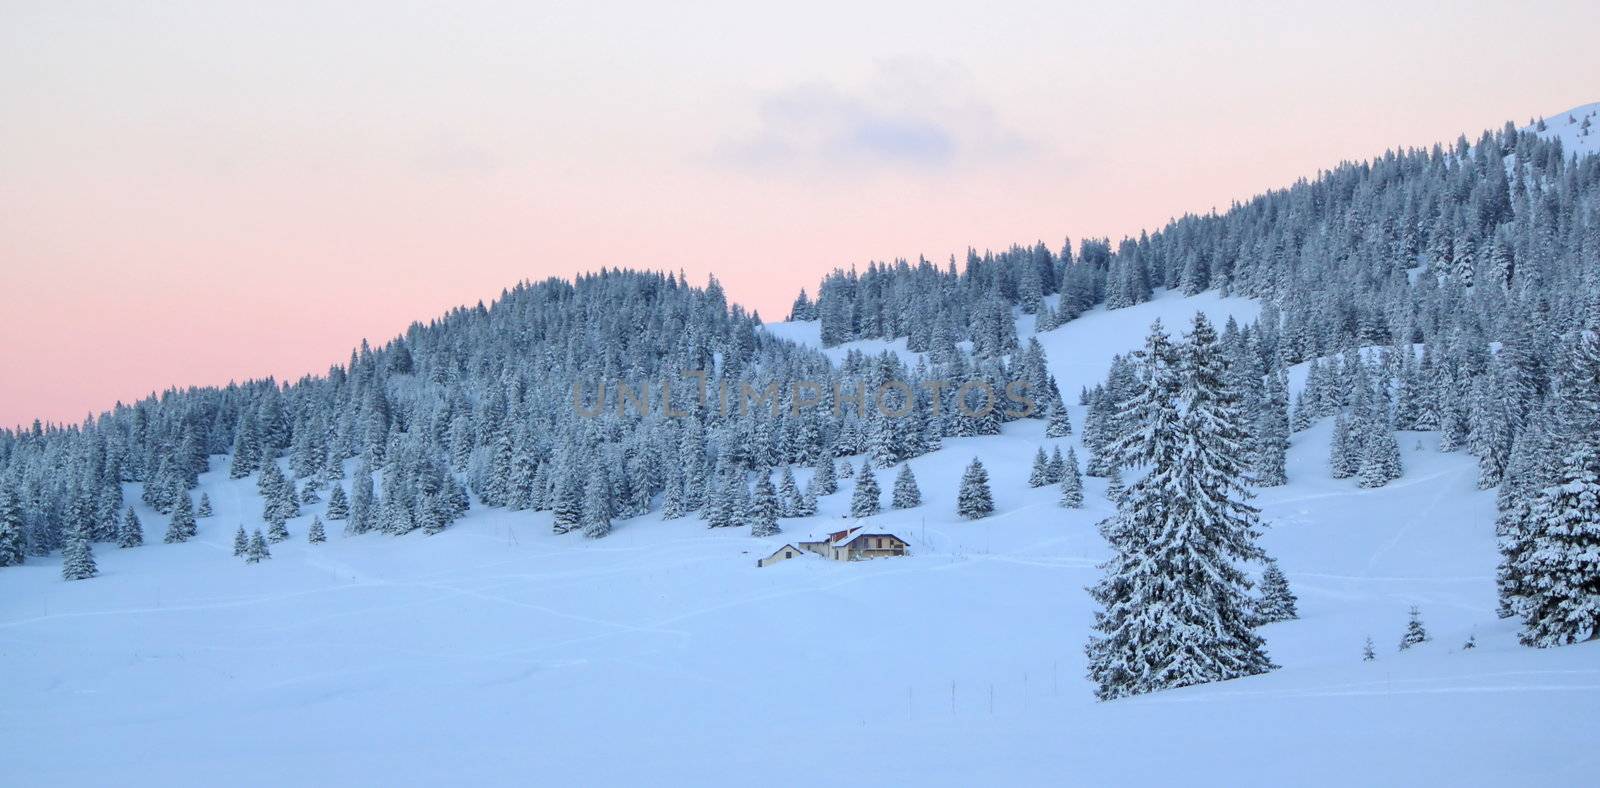 Sunset over fir trees by winter, Jura mountain, Switzerland by Elenaphotos21